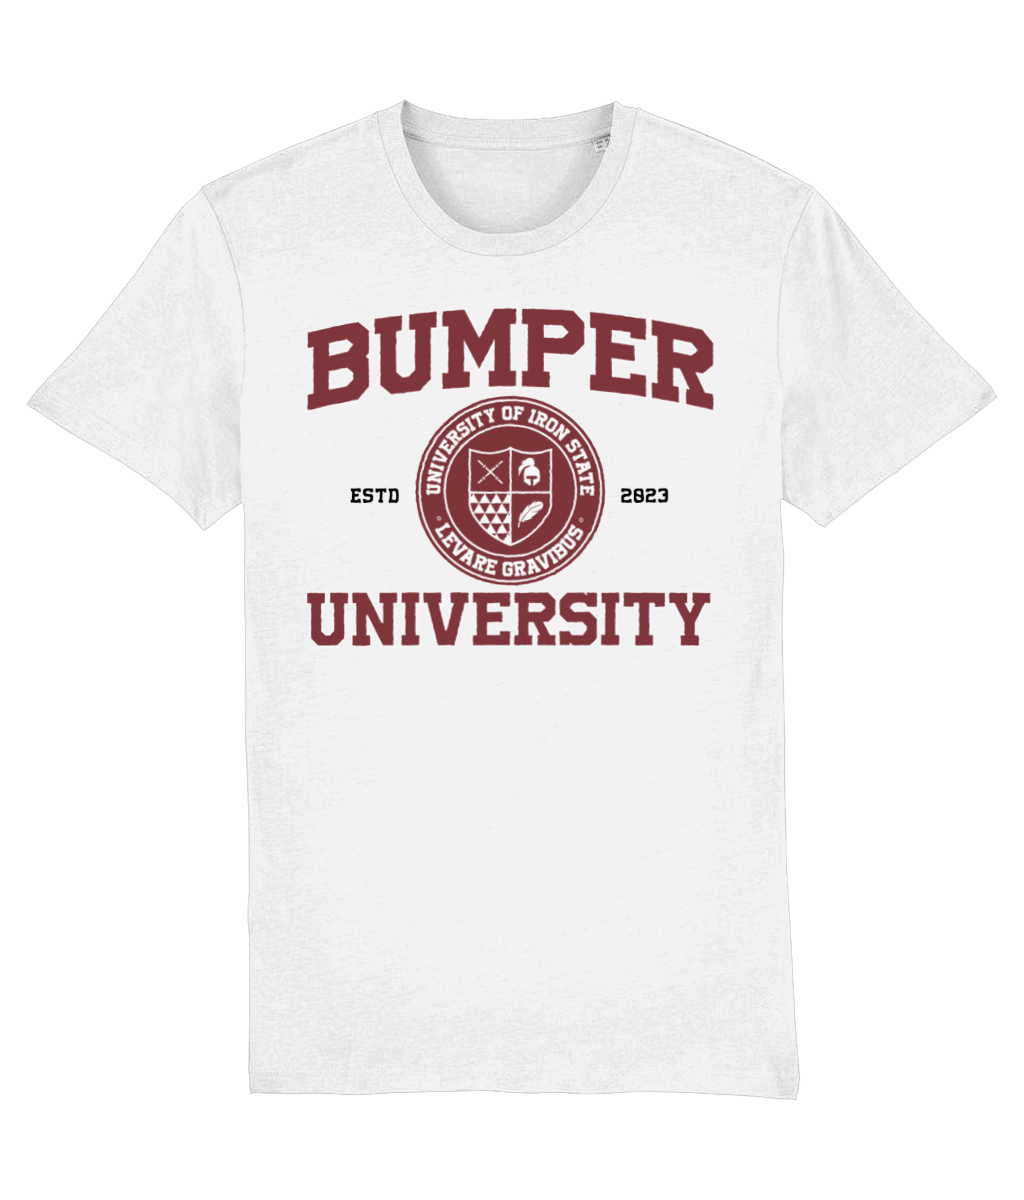 Bumper crest t-shirt - Bumper uni